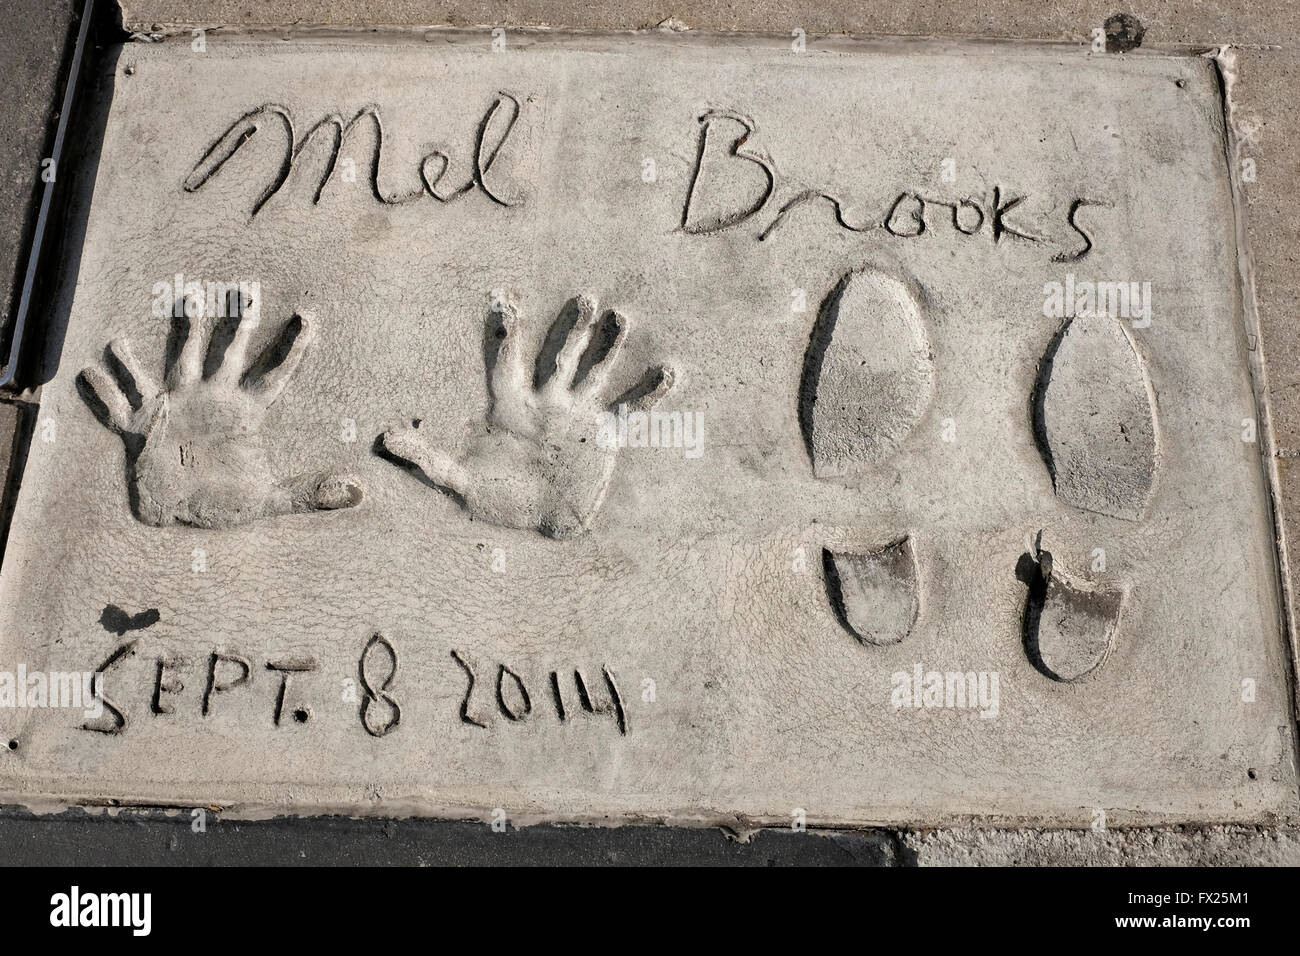 La main de Mel Brooks et empreintes de pieds, le Grauman's Chinese Theatre, à Hollywood, Los Angeles, Californie Banque D'Images